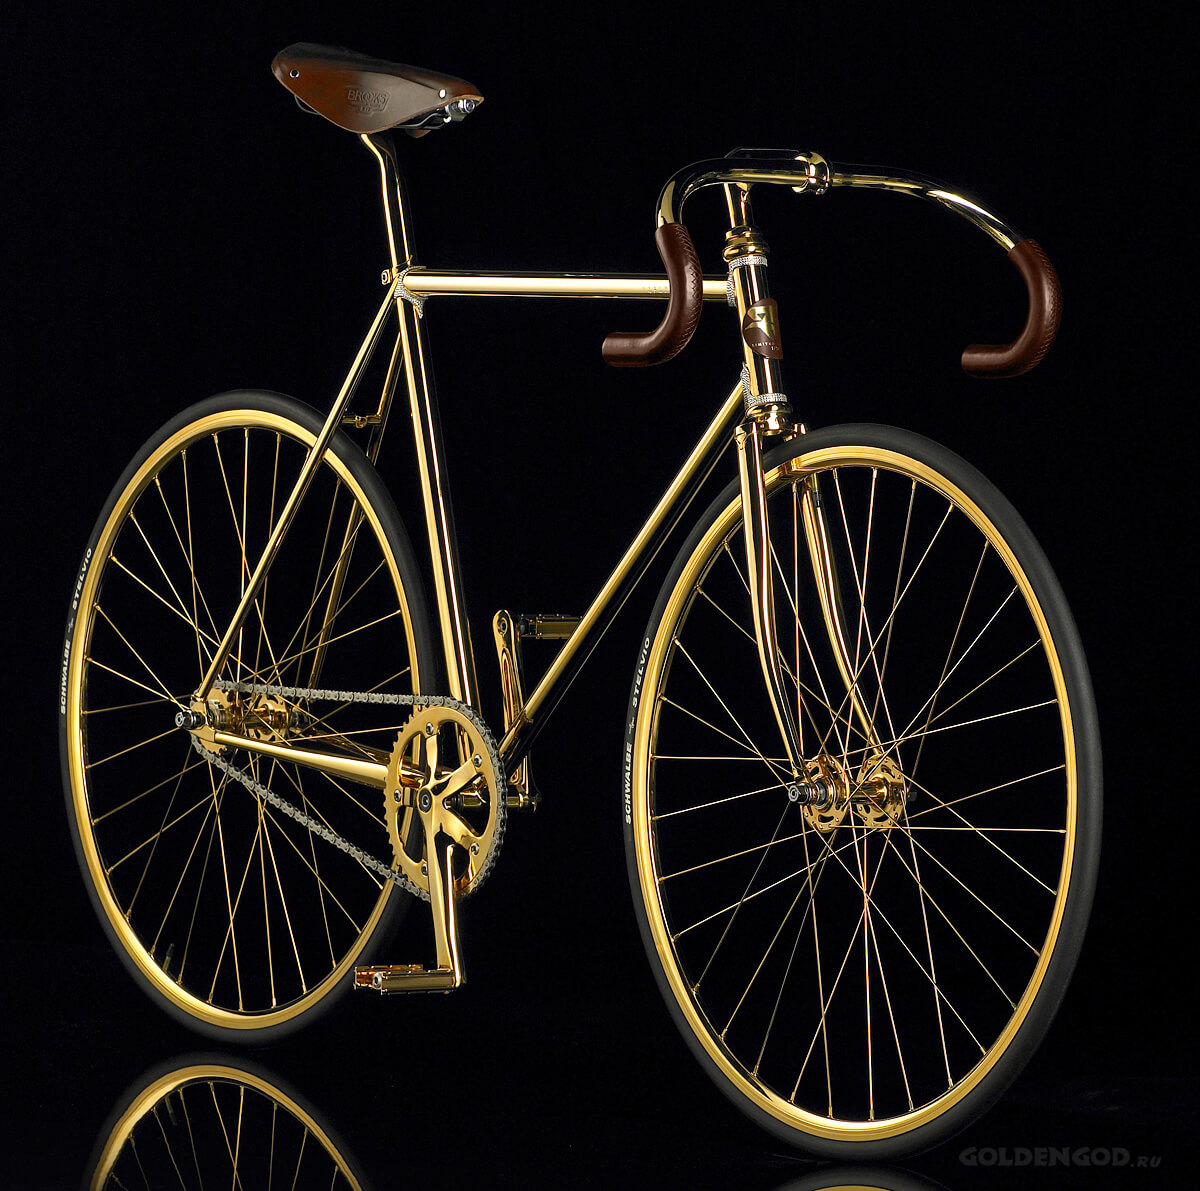 Auramania Crystal Edition: Sepeda Berlian Swarovski Berlapis Emas yang Memukau, Berapa Harganya?   